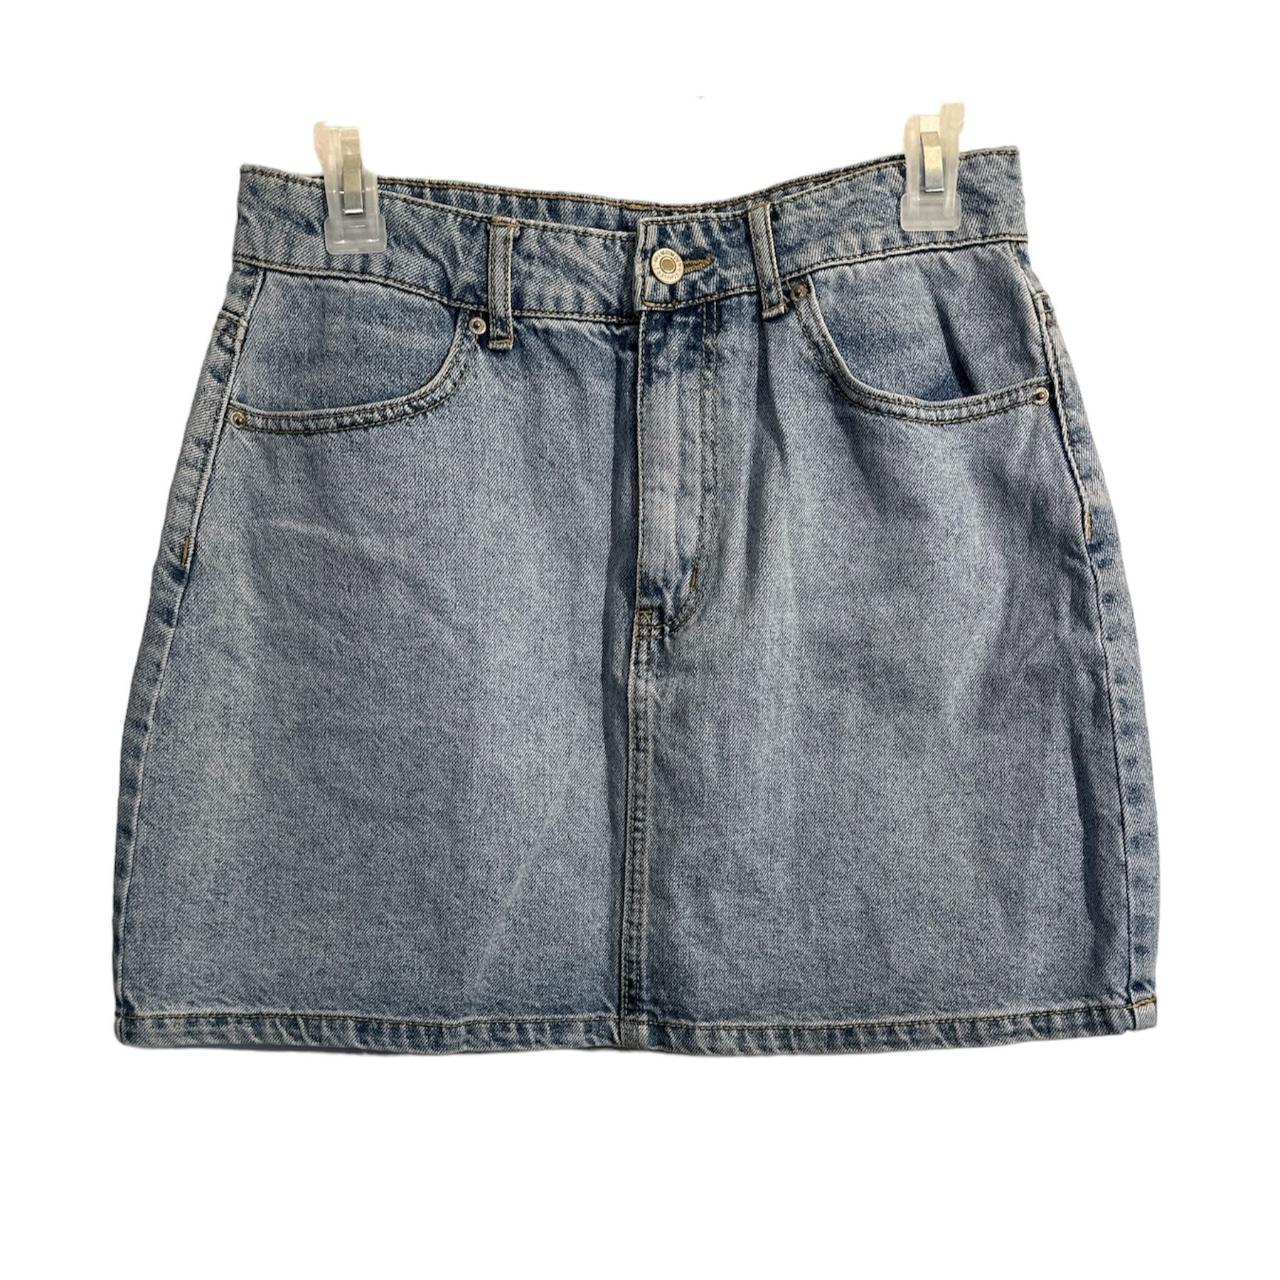 Forever 21 Denim Jean Mini Skirt Size Large Waist... - Depop